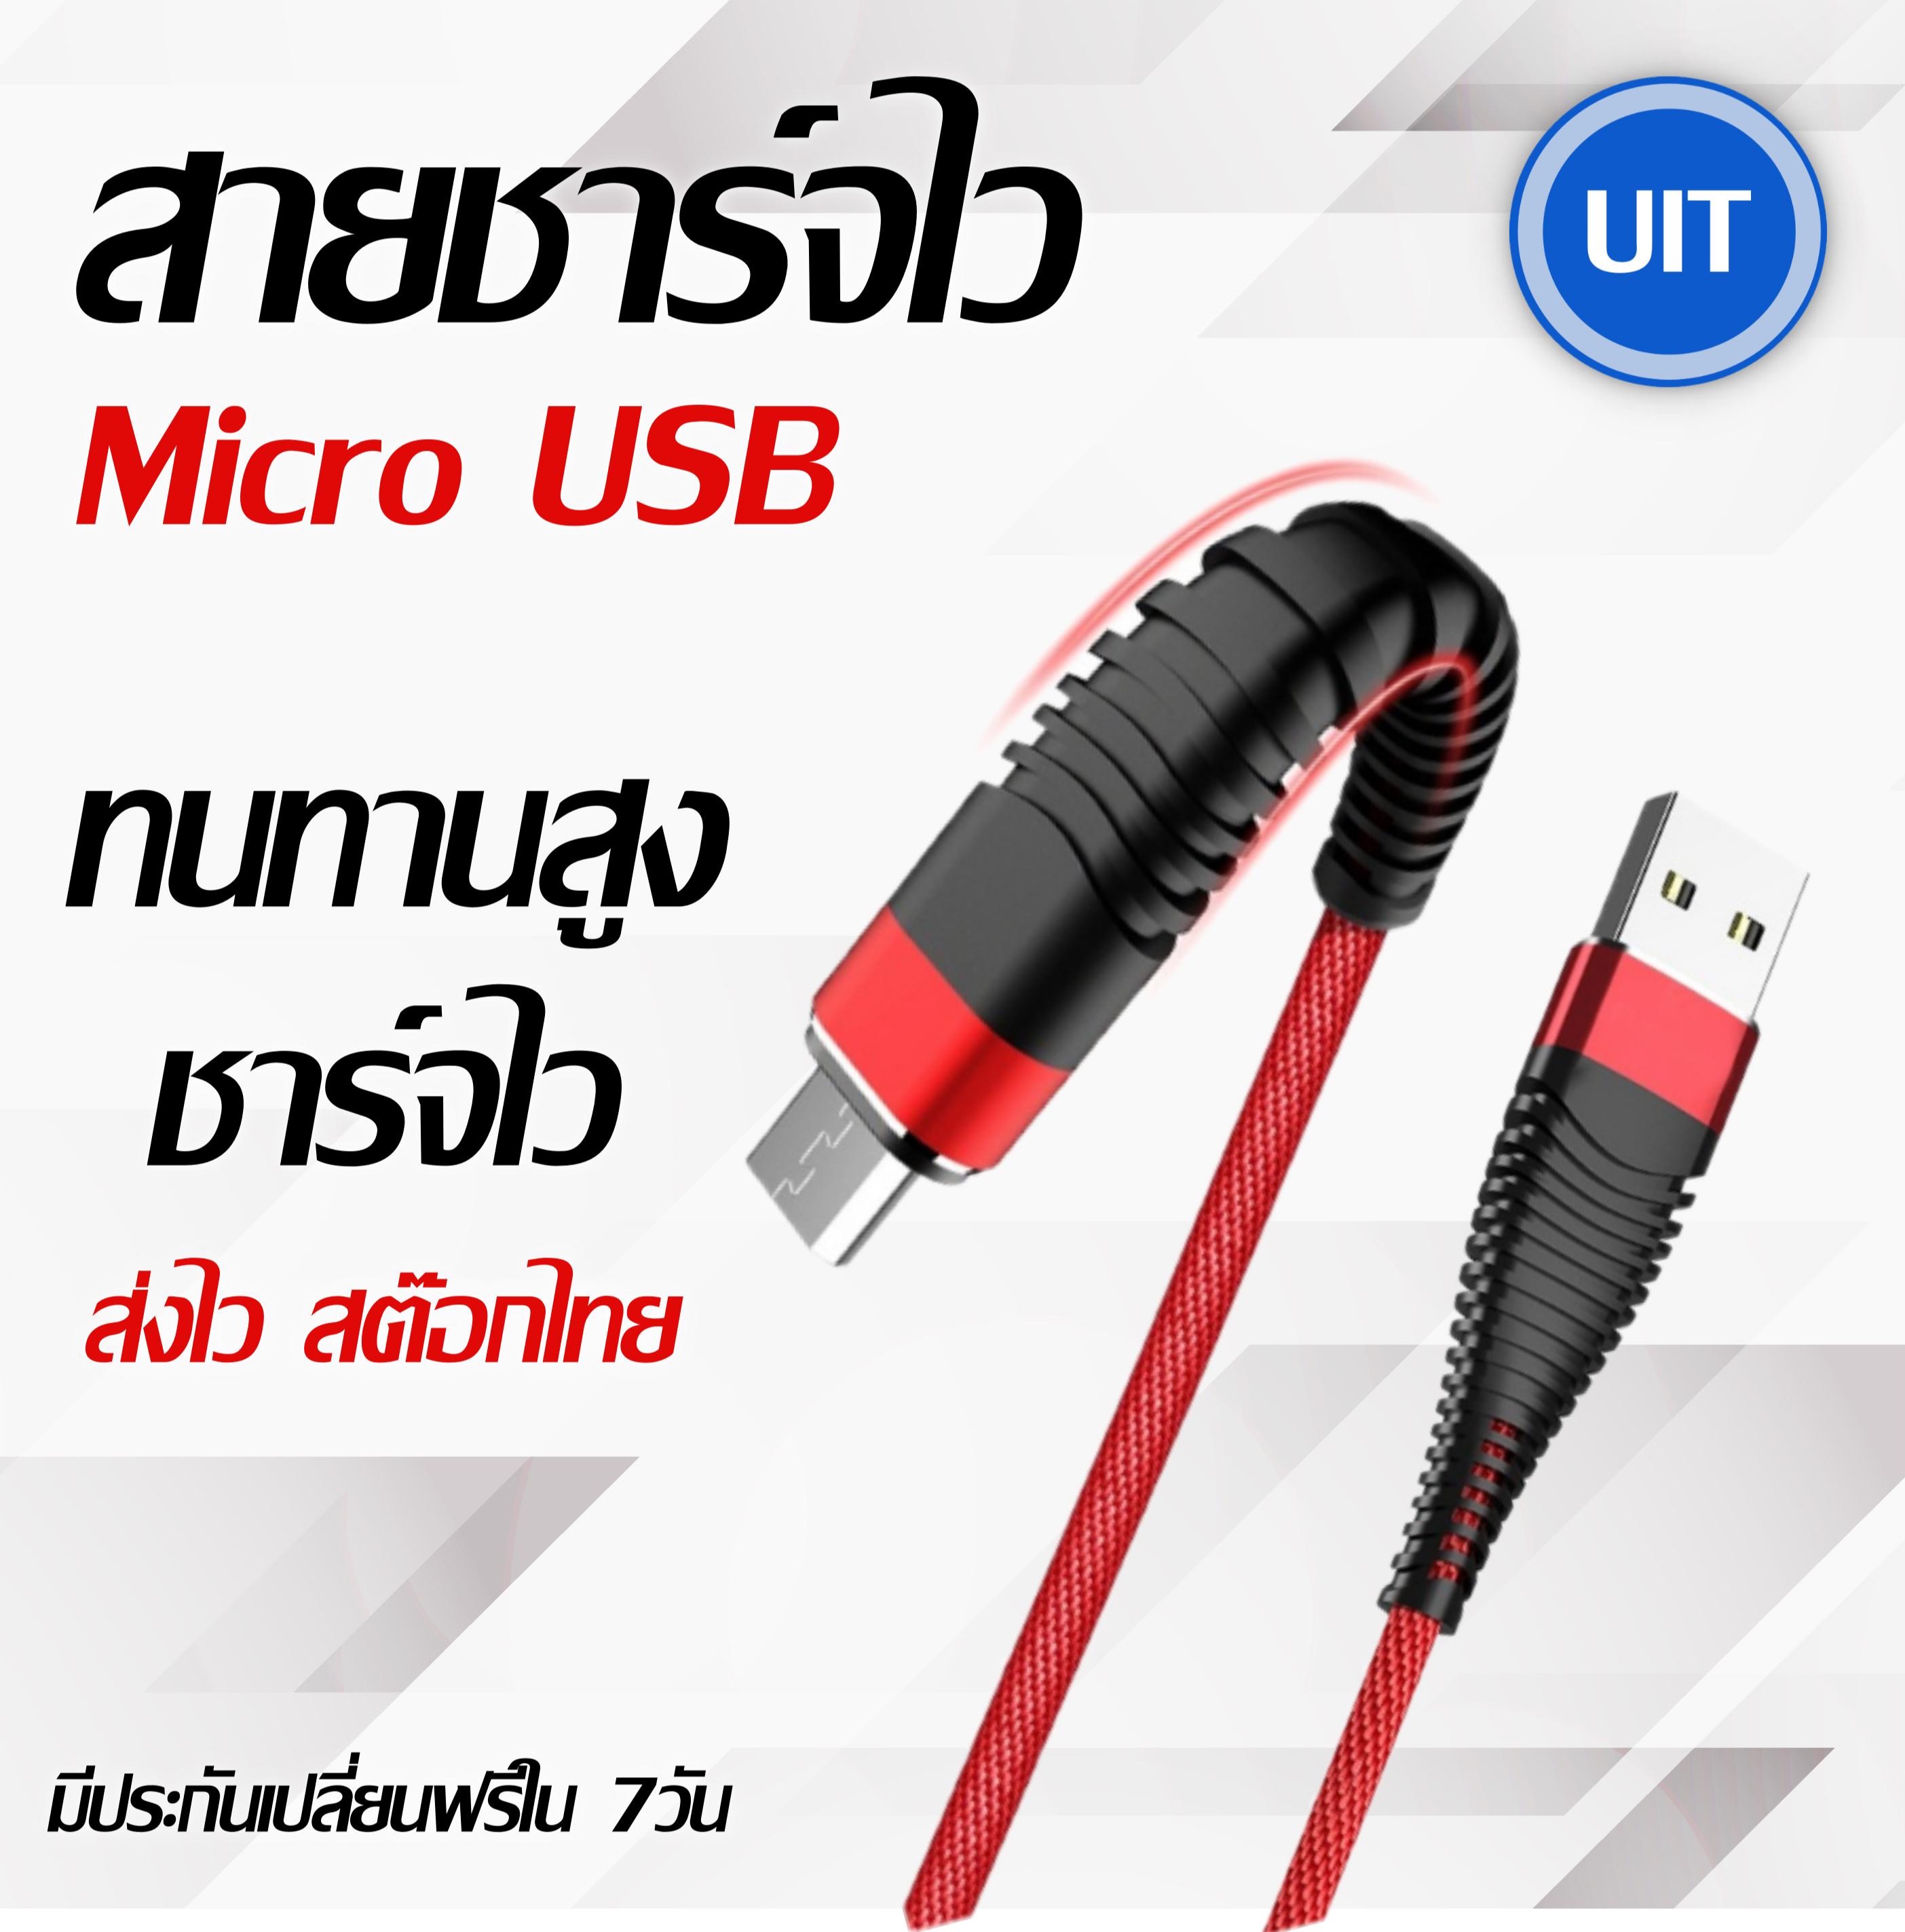 สายชาร์จ Micro USB ชาร์จเร็ว ข้อนิ่มบิดงอ ทนทานสูง ยาว1เมตร รับประกัน เคลมฟรี ชาร์จแอนดรอยด์ เชื่อมต่อ วีโว่ ซัมซุง อ้อปโป